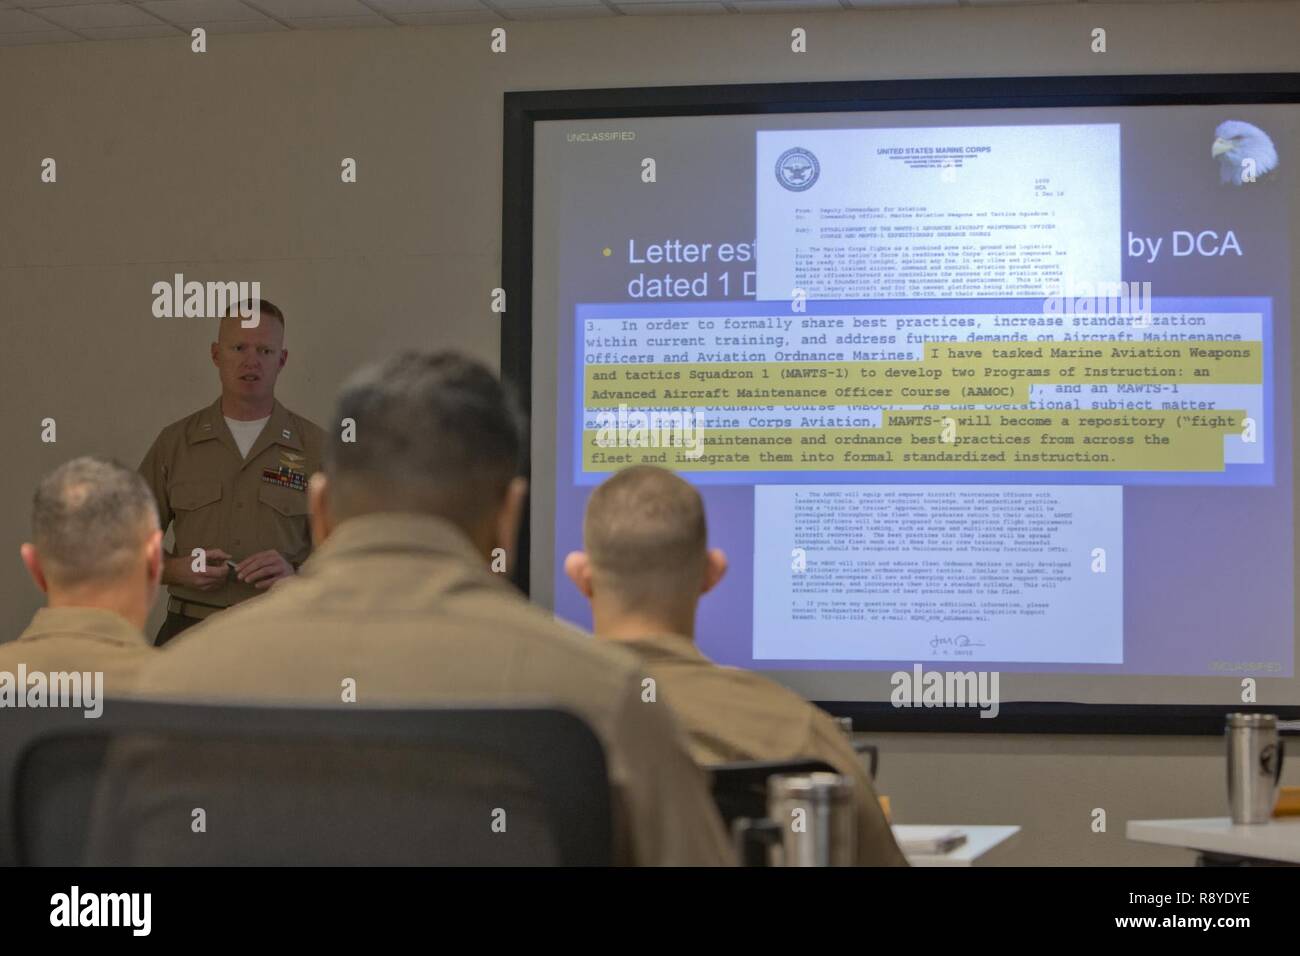 El capitán de marina de los EE.UU. Scott L. Campbell, oficial de mantenimiento con armas y tácticas de Aviación Marina Escuadrón uno (MAWTS-1) da la bienvenida a los estudiantes que asistieron al primer curso de oficial de mantenimiento de aviones avanzados (AAMOC) en Marine Corps Air Station Yuma, Arizona, el 13 de marzo, 2017. AAMOC capacitará a oficiales de mantenimiento de aeronaves con herramientas de liderazgo, mayores conocimientos técnicos y las prácticas normalizadas mediante procedimientos rigurosos de académicos y de capacitación práctica a fin de disminuir los percances relacionados con el suelo y aumentar la incursión de generación. Foto de stock